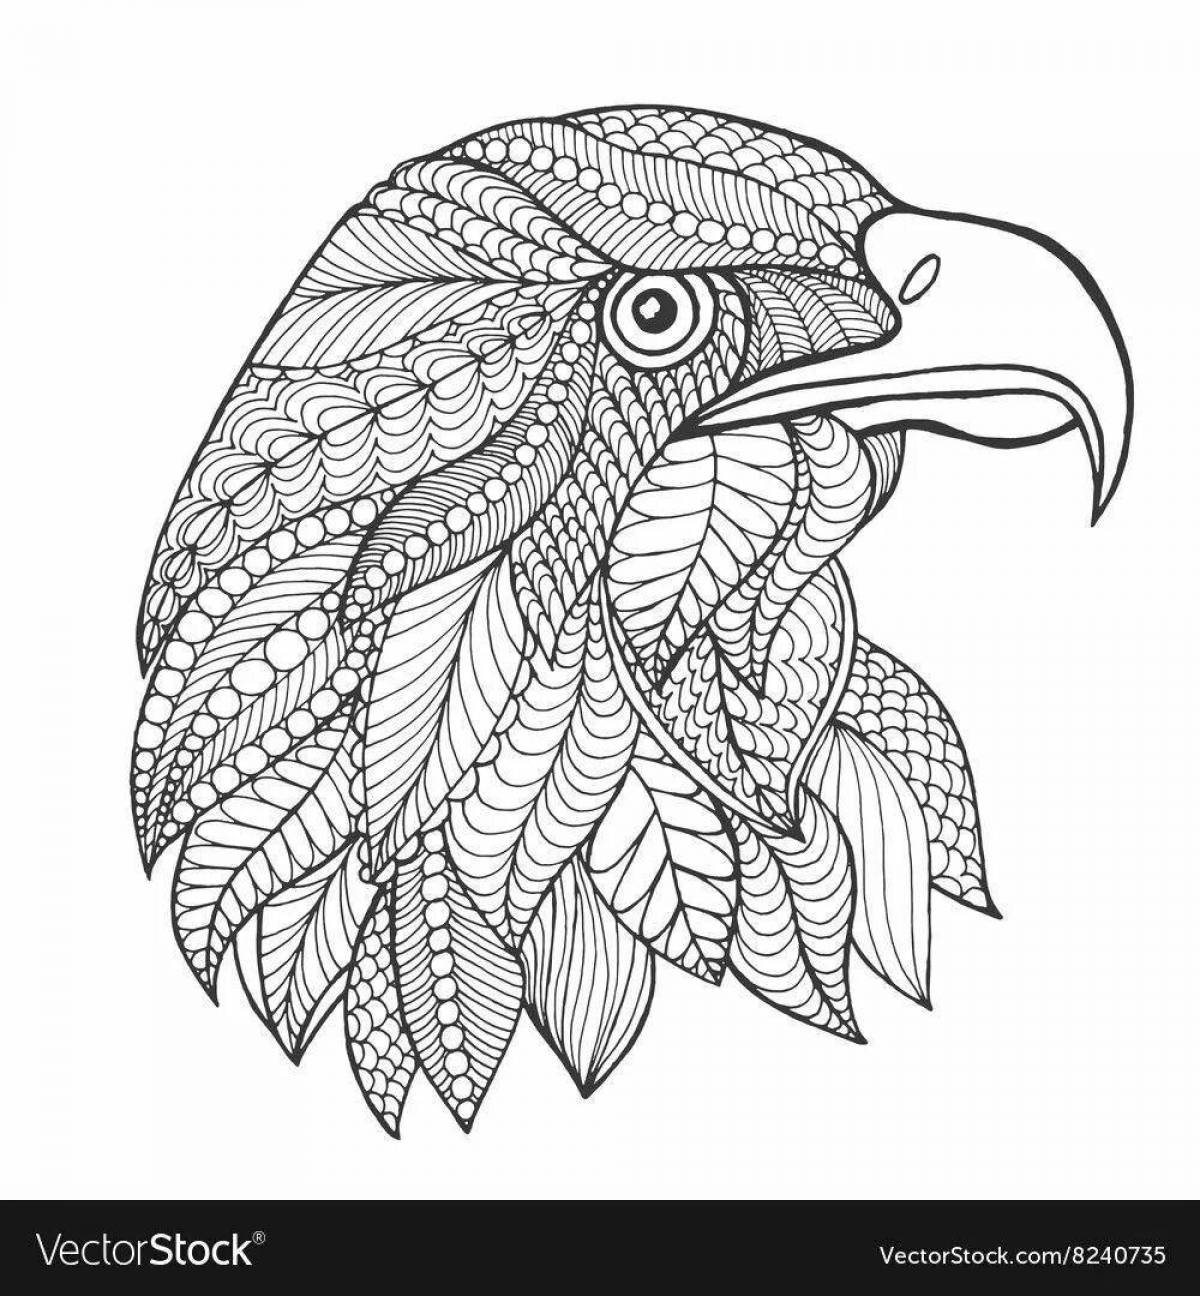 Раскраска splintery орел антистресс